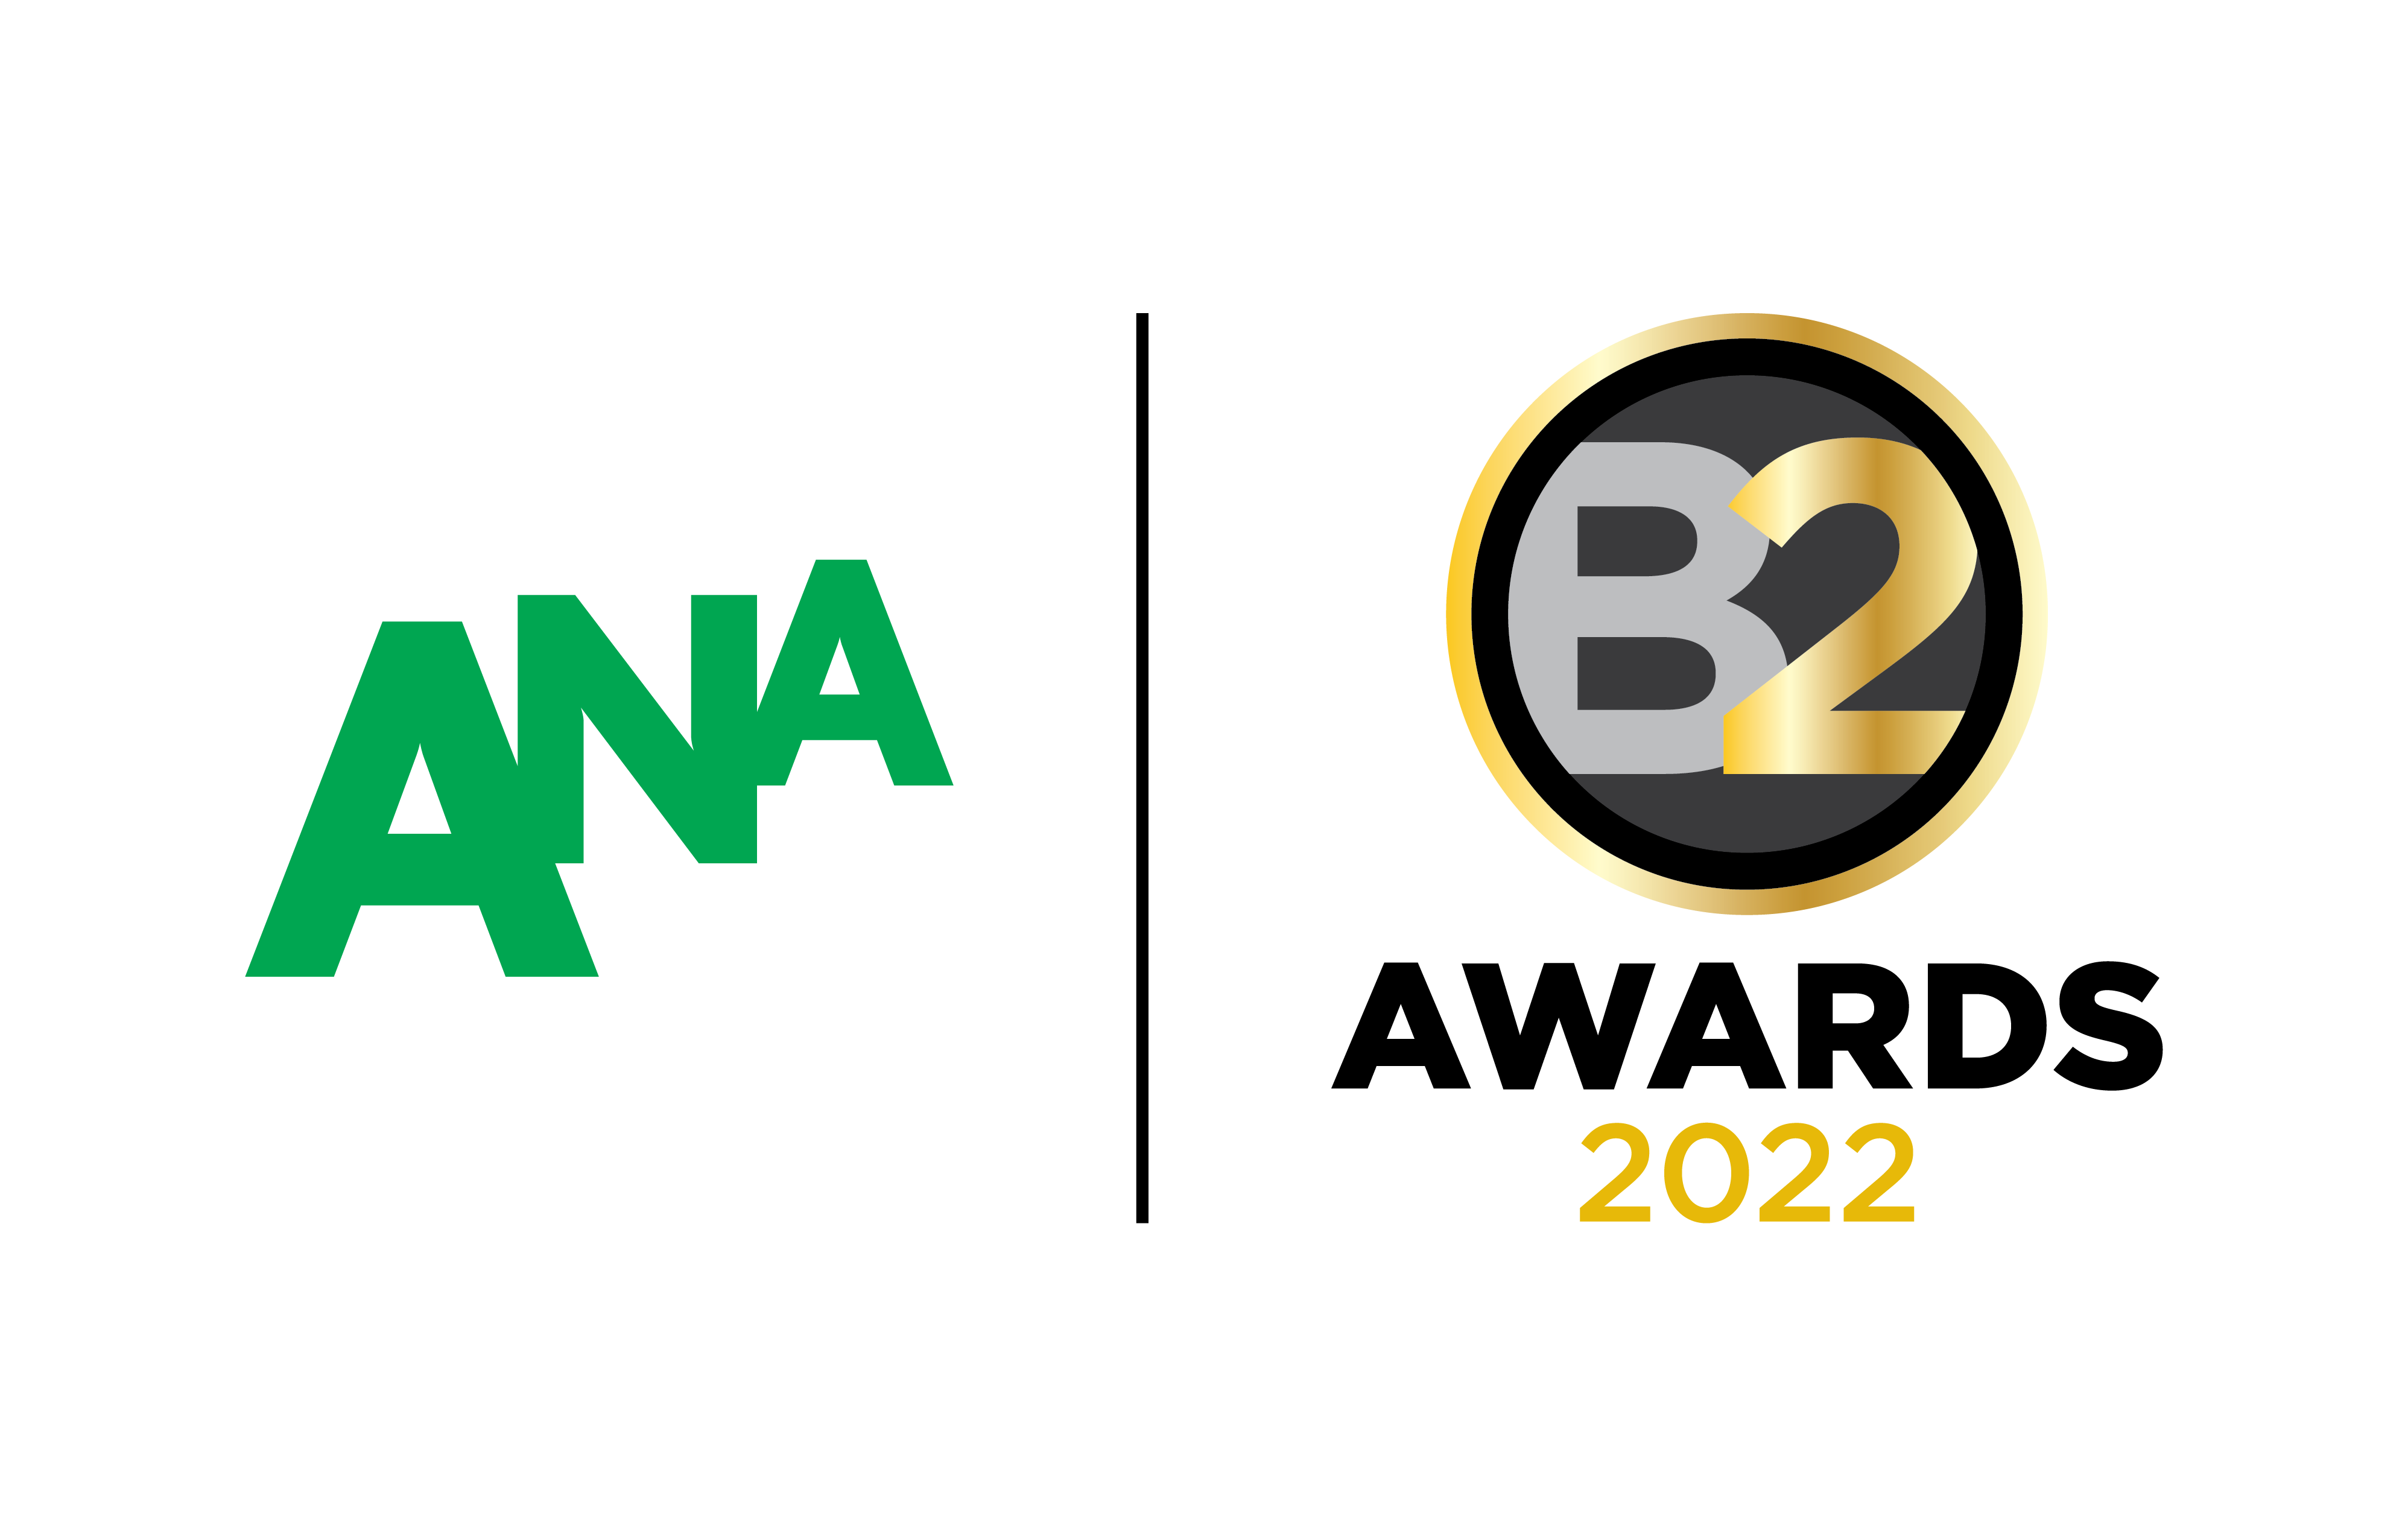 B2 ANA Awards 2022